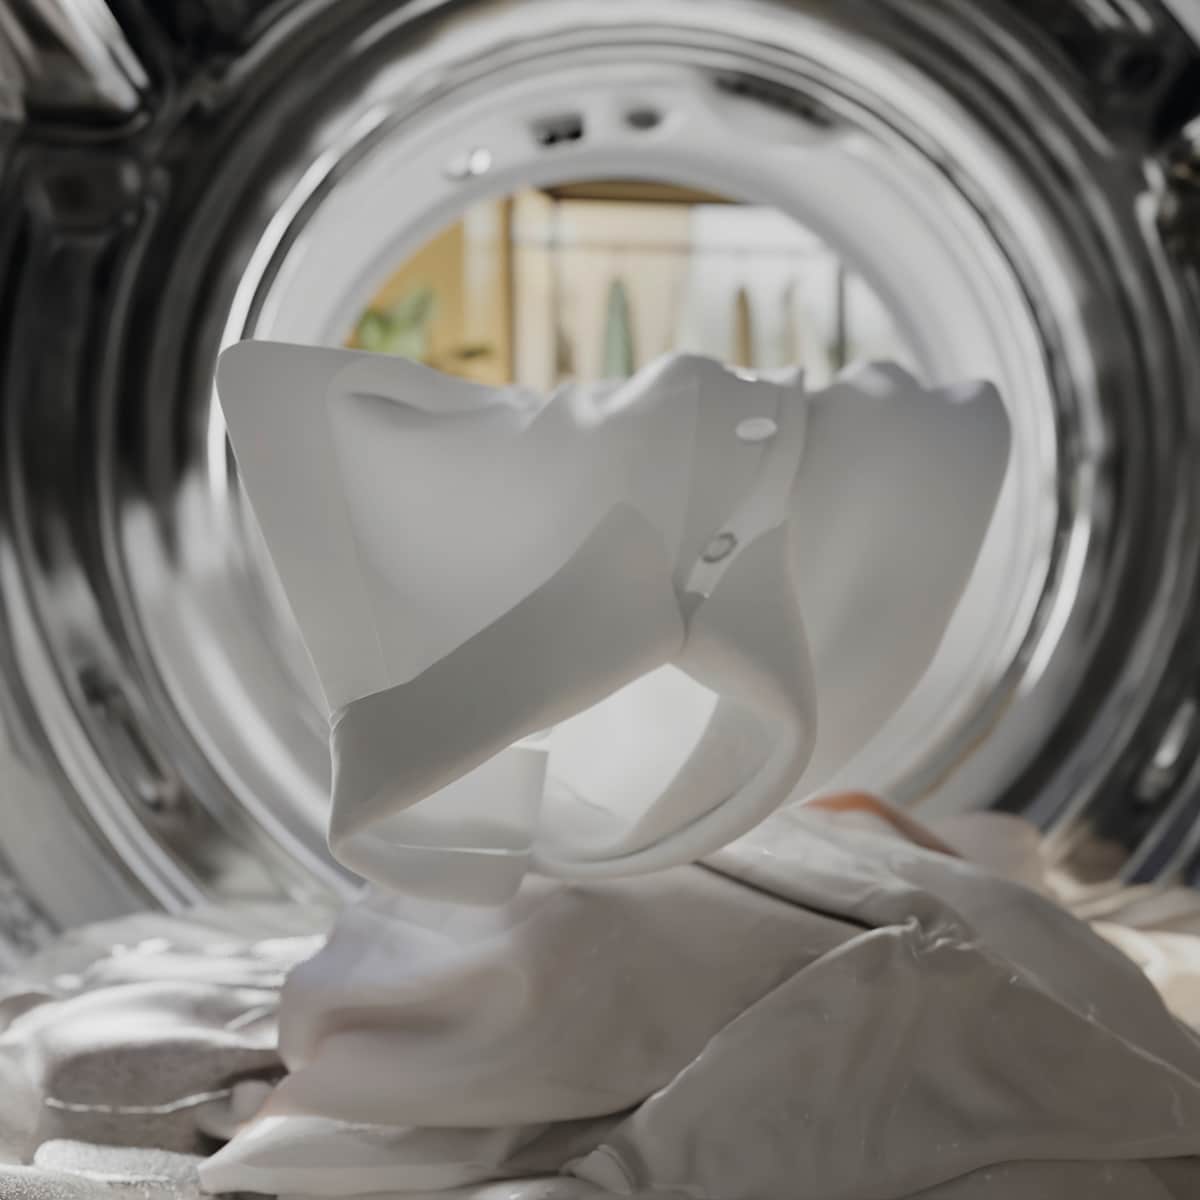 Miele vaskemaskine set indefra med hvidt vasketøj